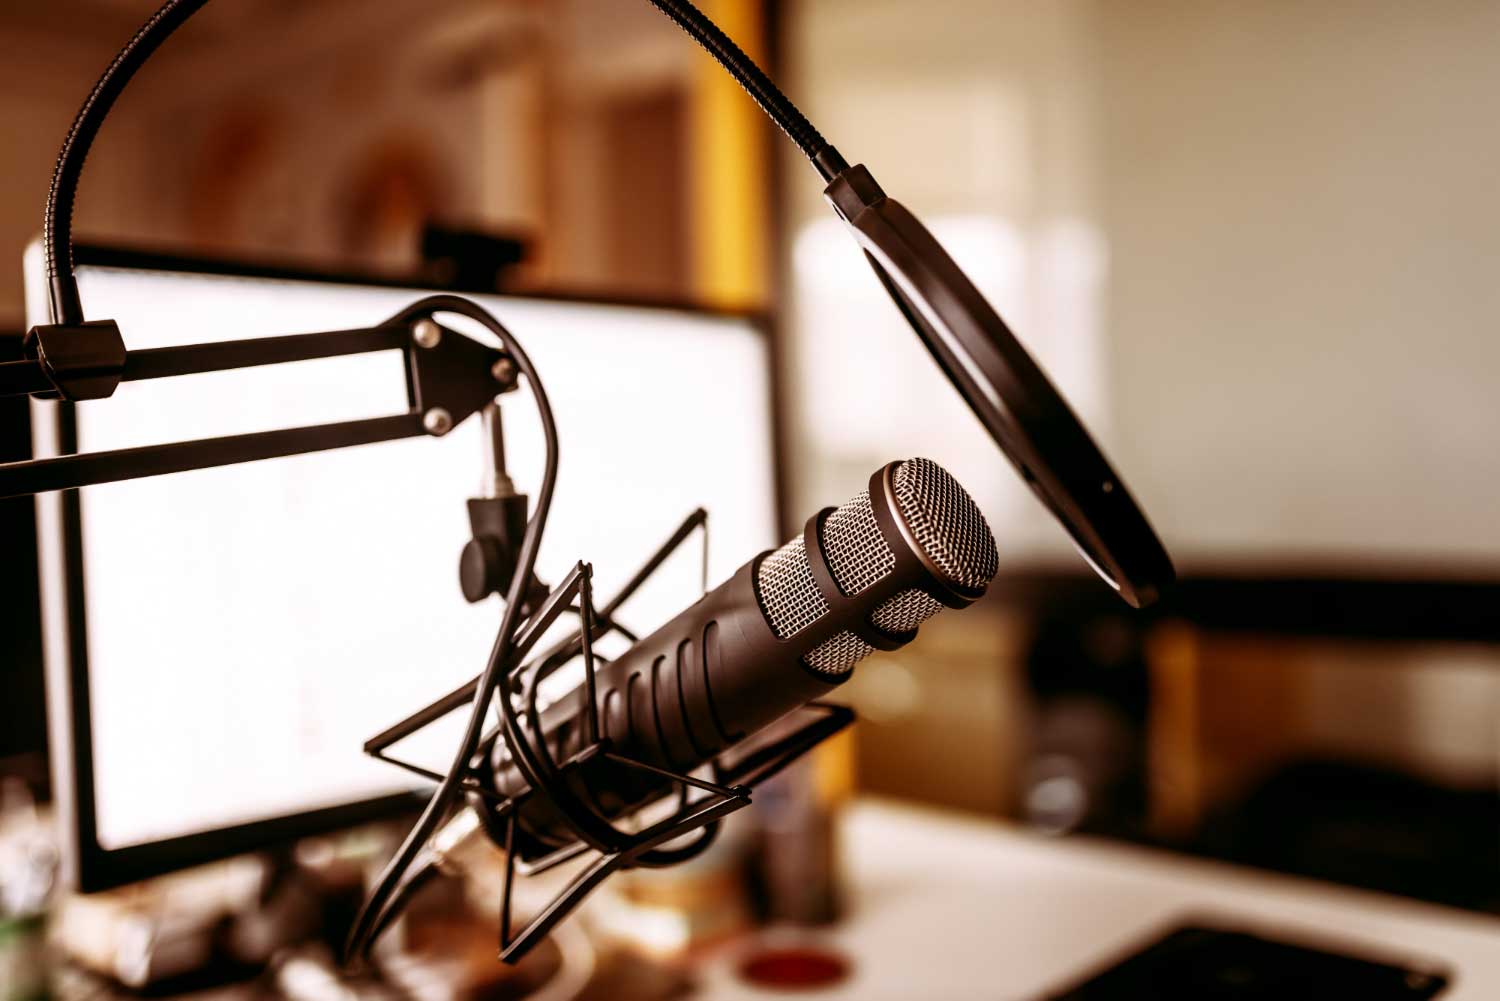 Über 50% der Podcasts unzureichend als Werbung gekennzeichnet